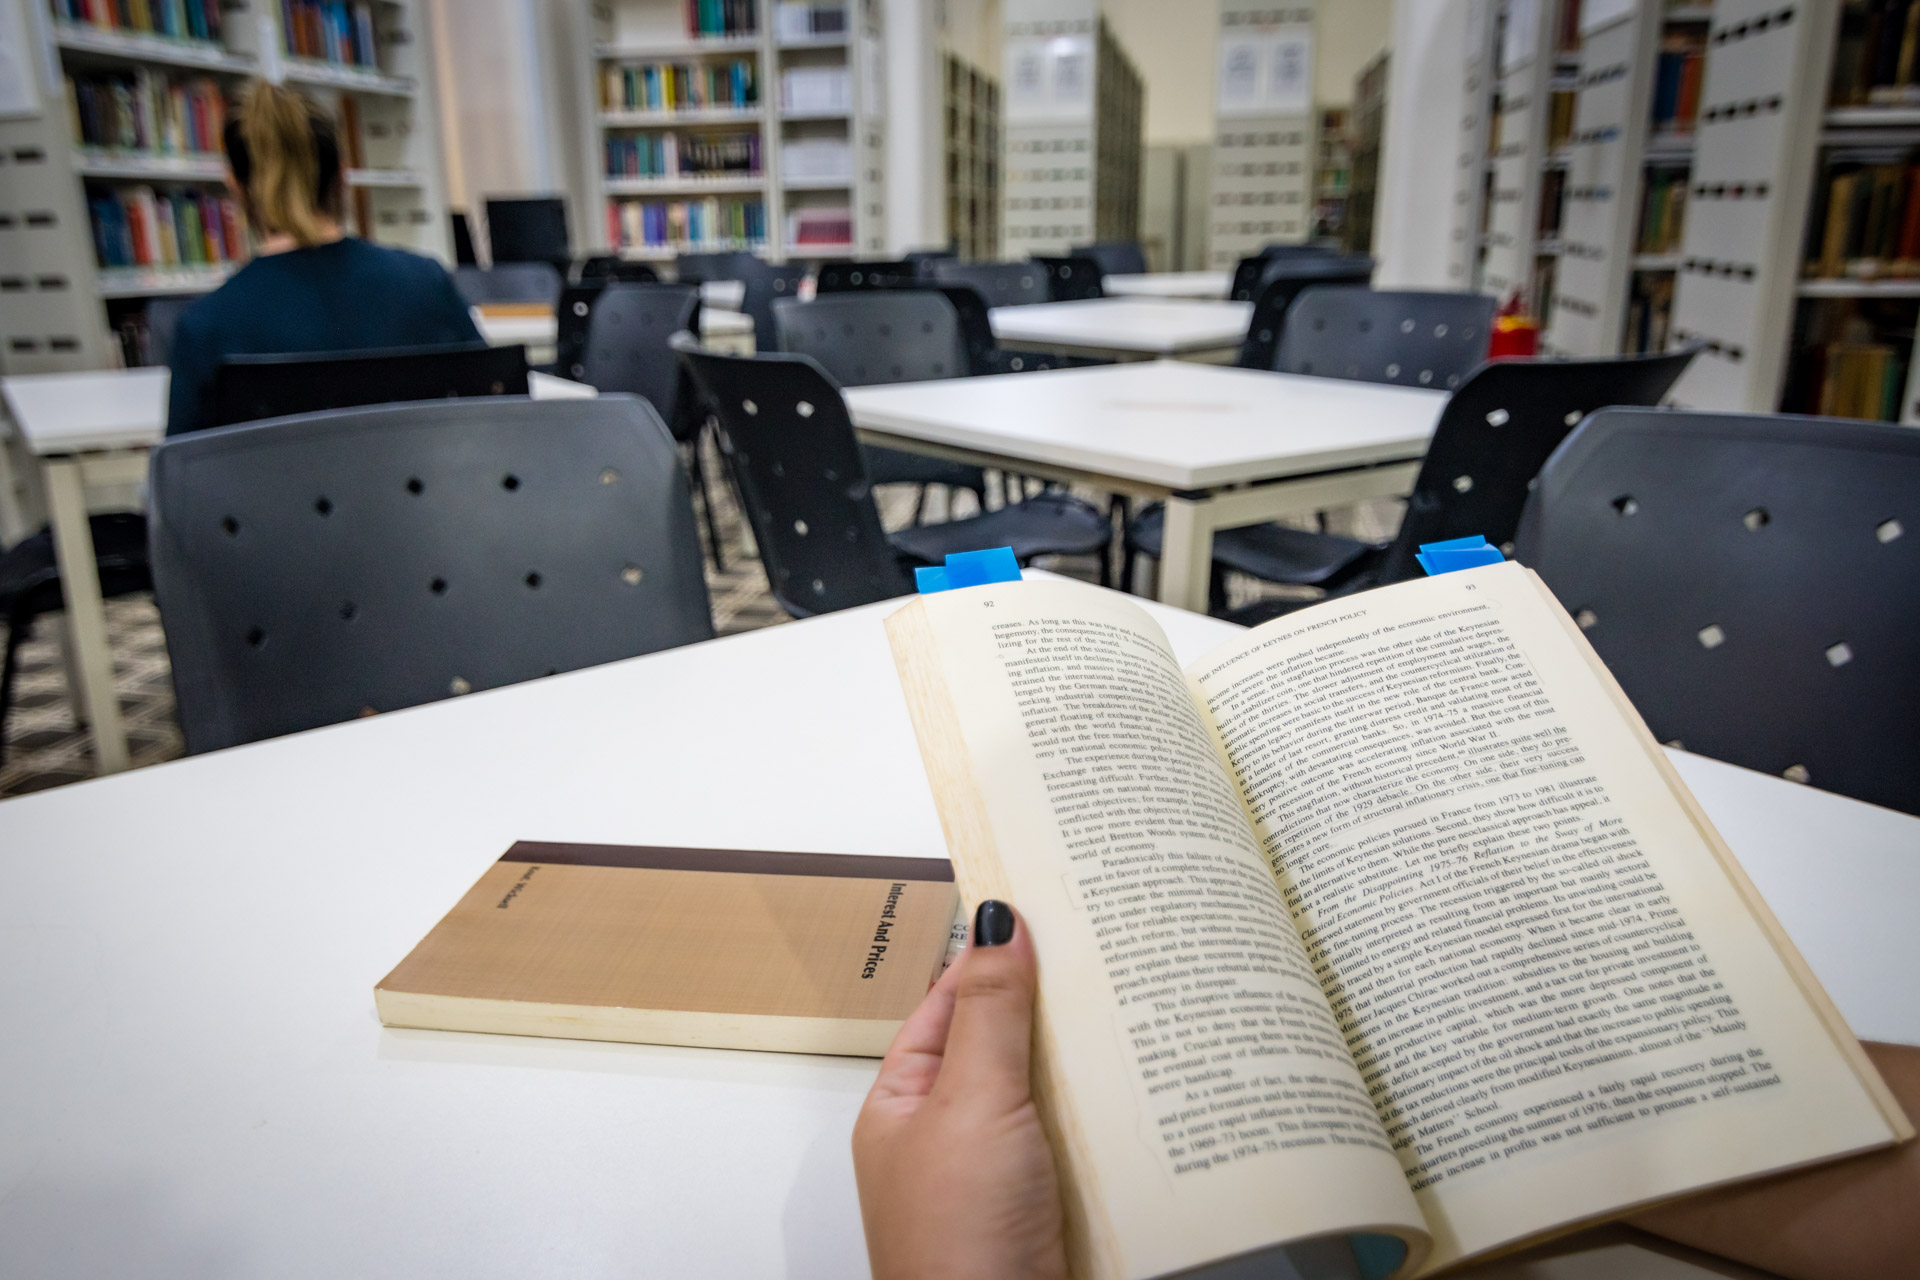 Fotografia de uma biblioteca onde, em destaque, uma pessoa segura um livro aberto enquanto outro exemplar está em cima de uma mesa. Ao fundo, mesas, cadeiras e prateleiras com livros.